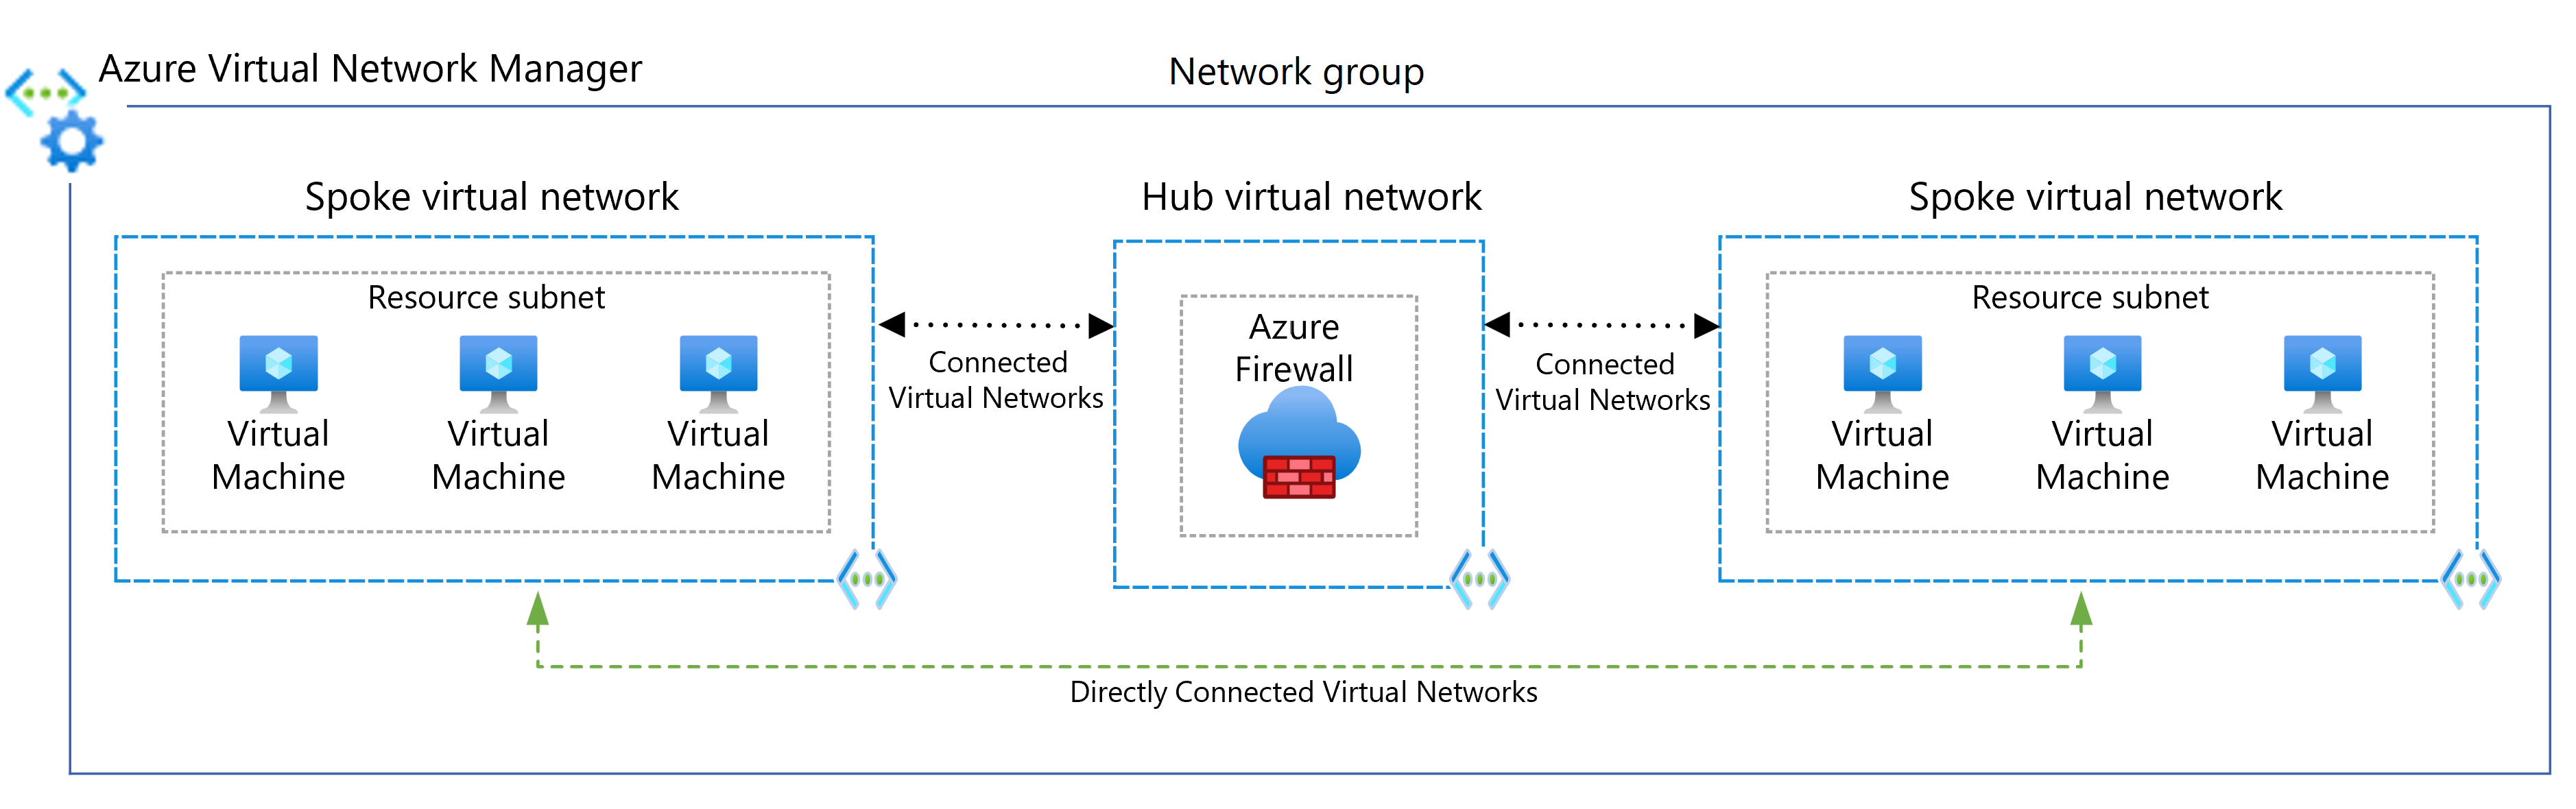 Diagramme illustrant l’utilisation de Virtual Network Manager pour la connectivité directe entre les spokes.